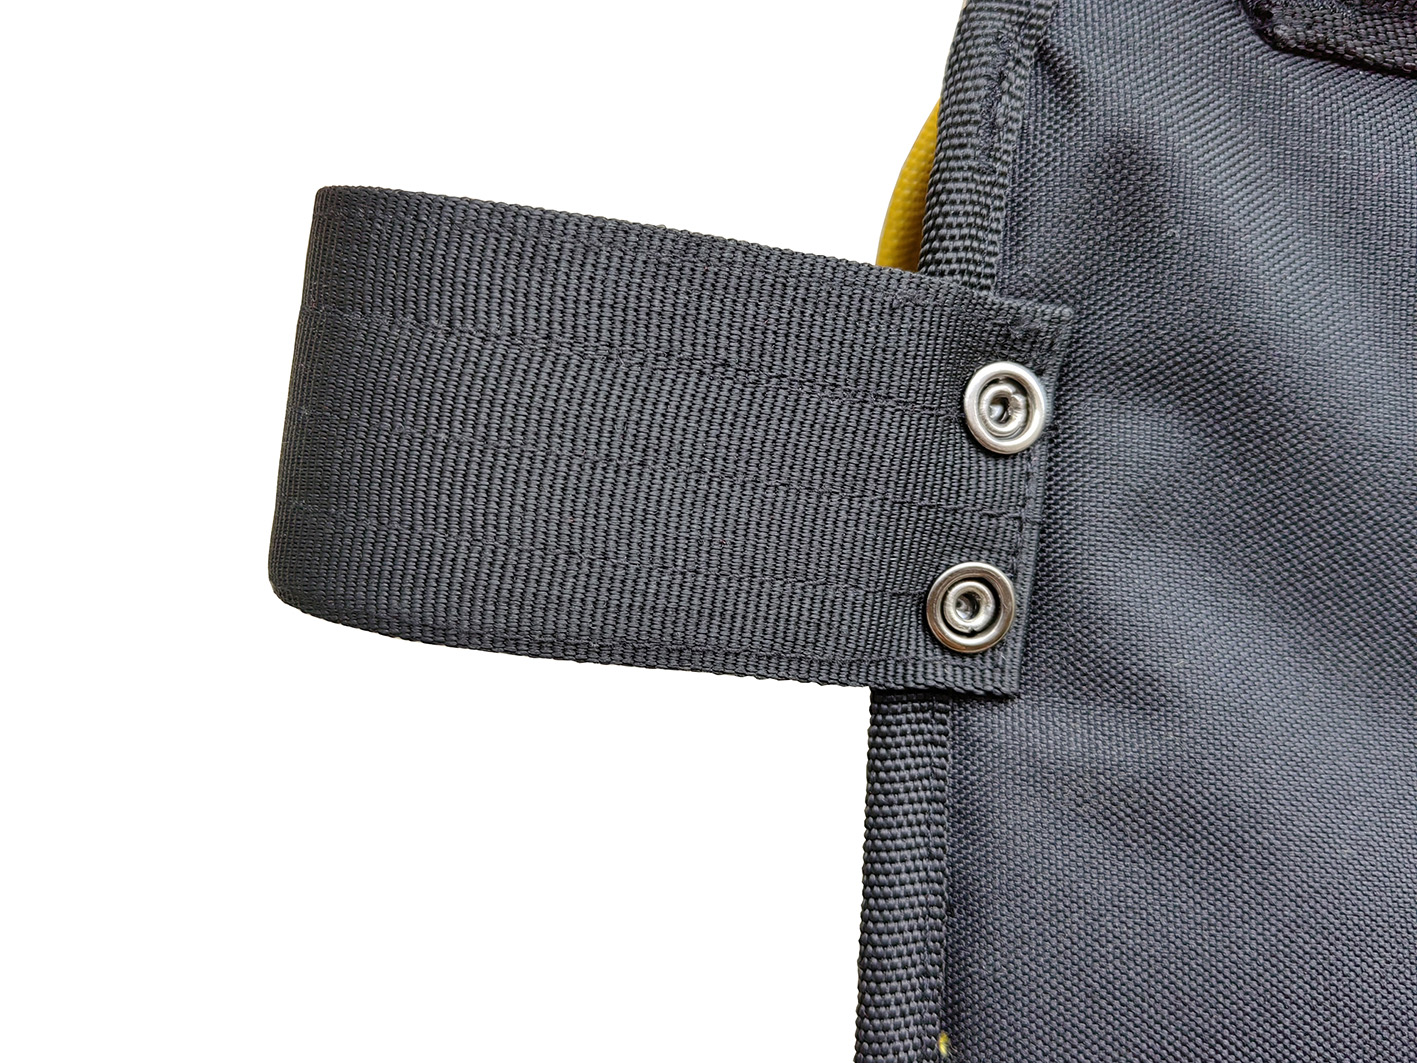 Durable adjustable waist tool bag belt mullet buster 3 bag tool belt